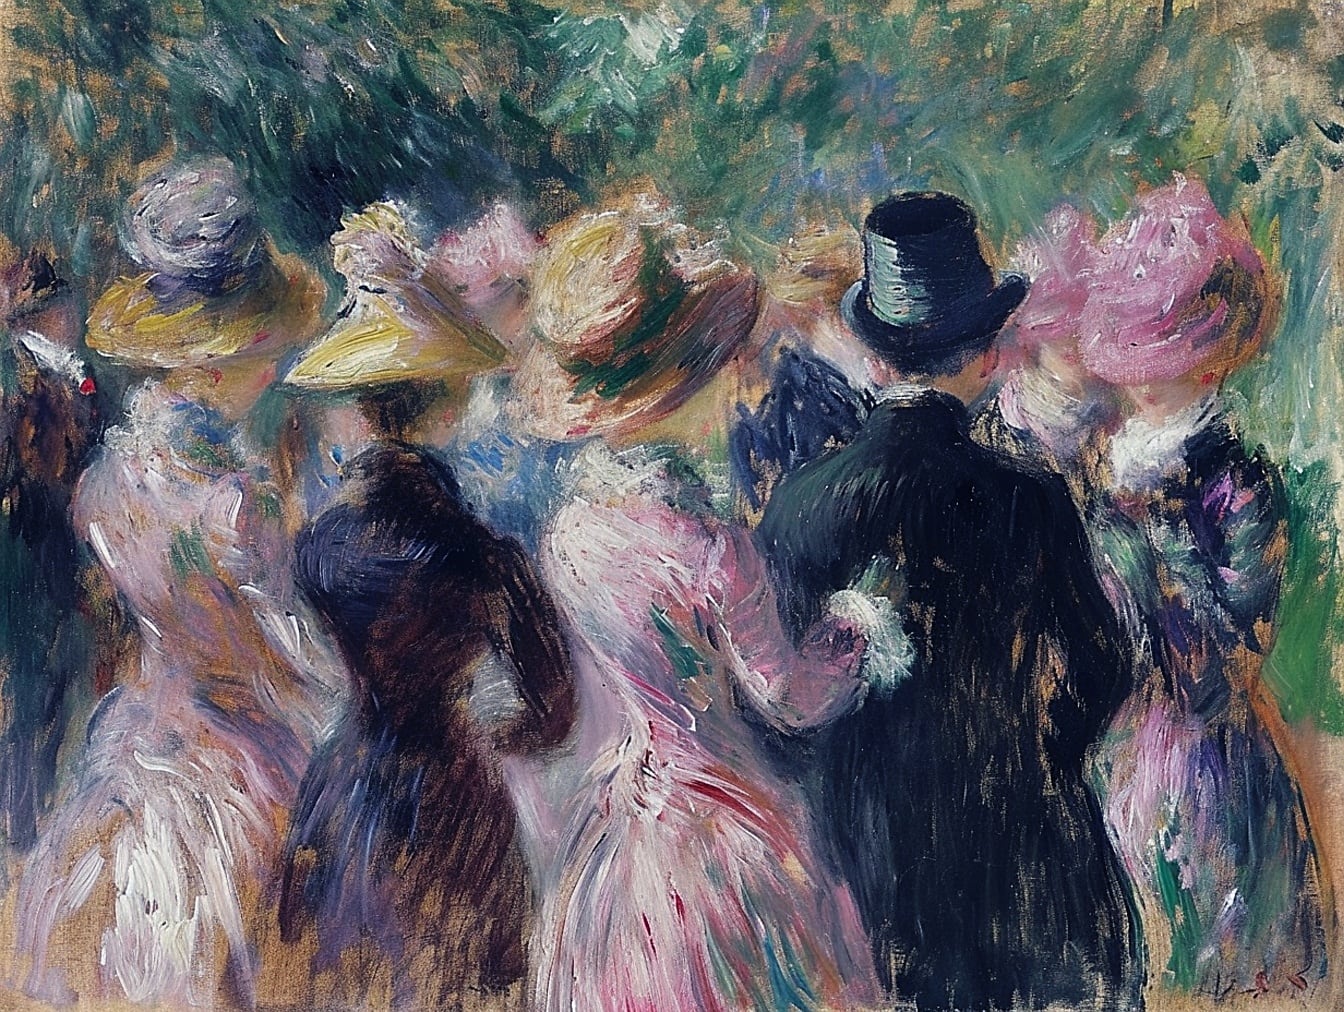 Tranh sơn dầu của nhóm người mặc váy và mũ